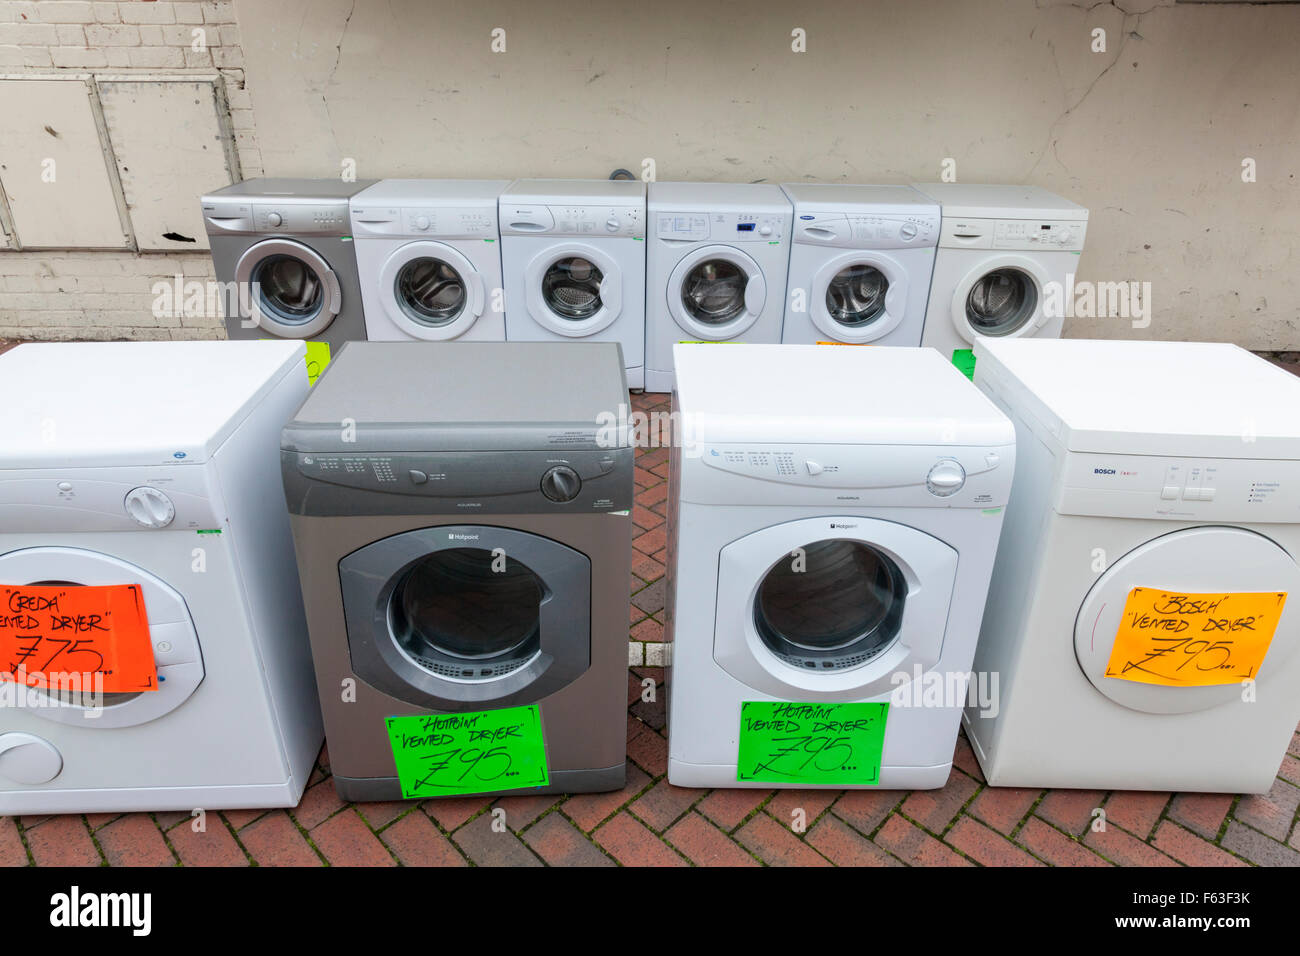 Zweite Hand weiße Ware. Alte und gebrauchte Waschmaschine und Wäschetrockner Verkauf auf einer britischen Stadt Centre Street. Nottinghamshire, England, Großbritannien Stockfoto